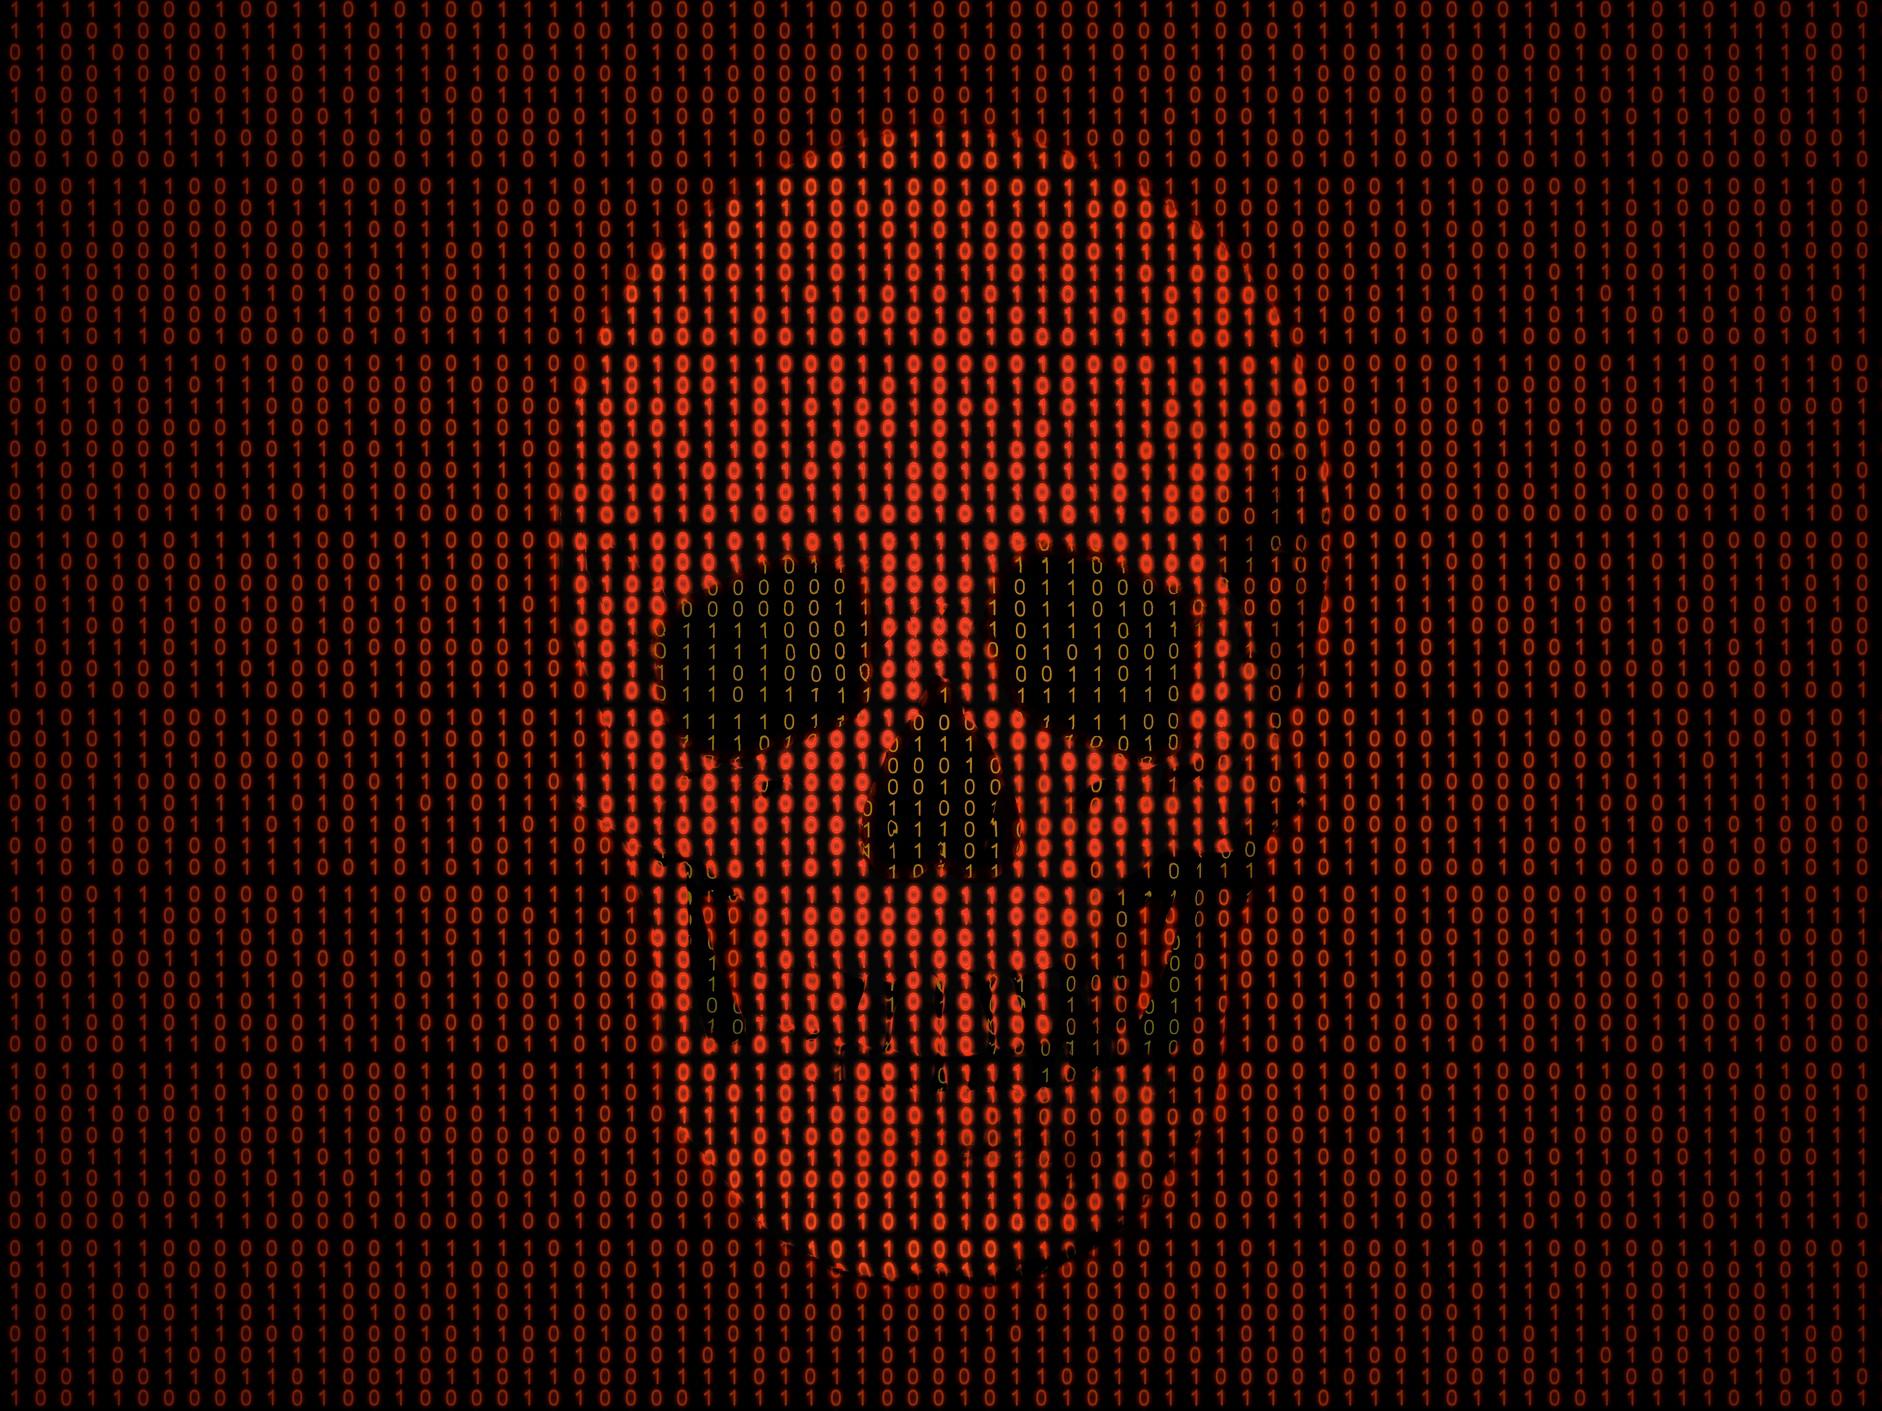 Hacker Skull Wallpaper